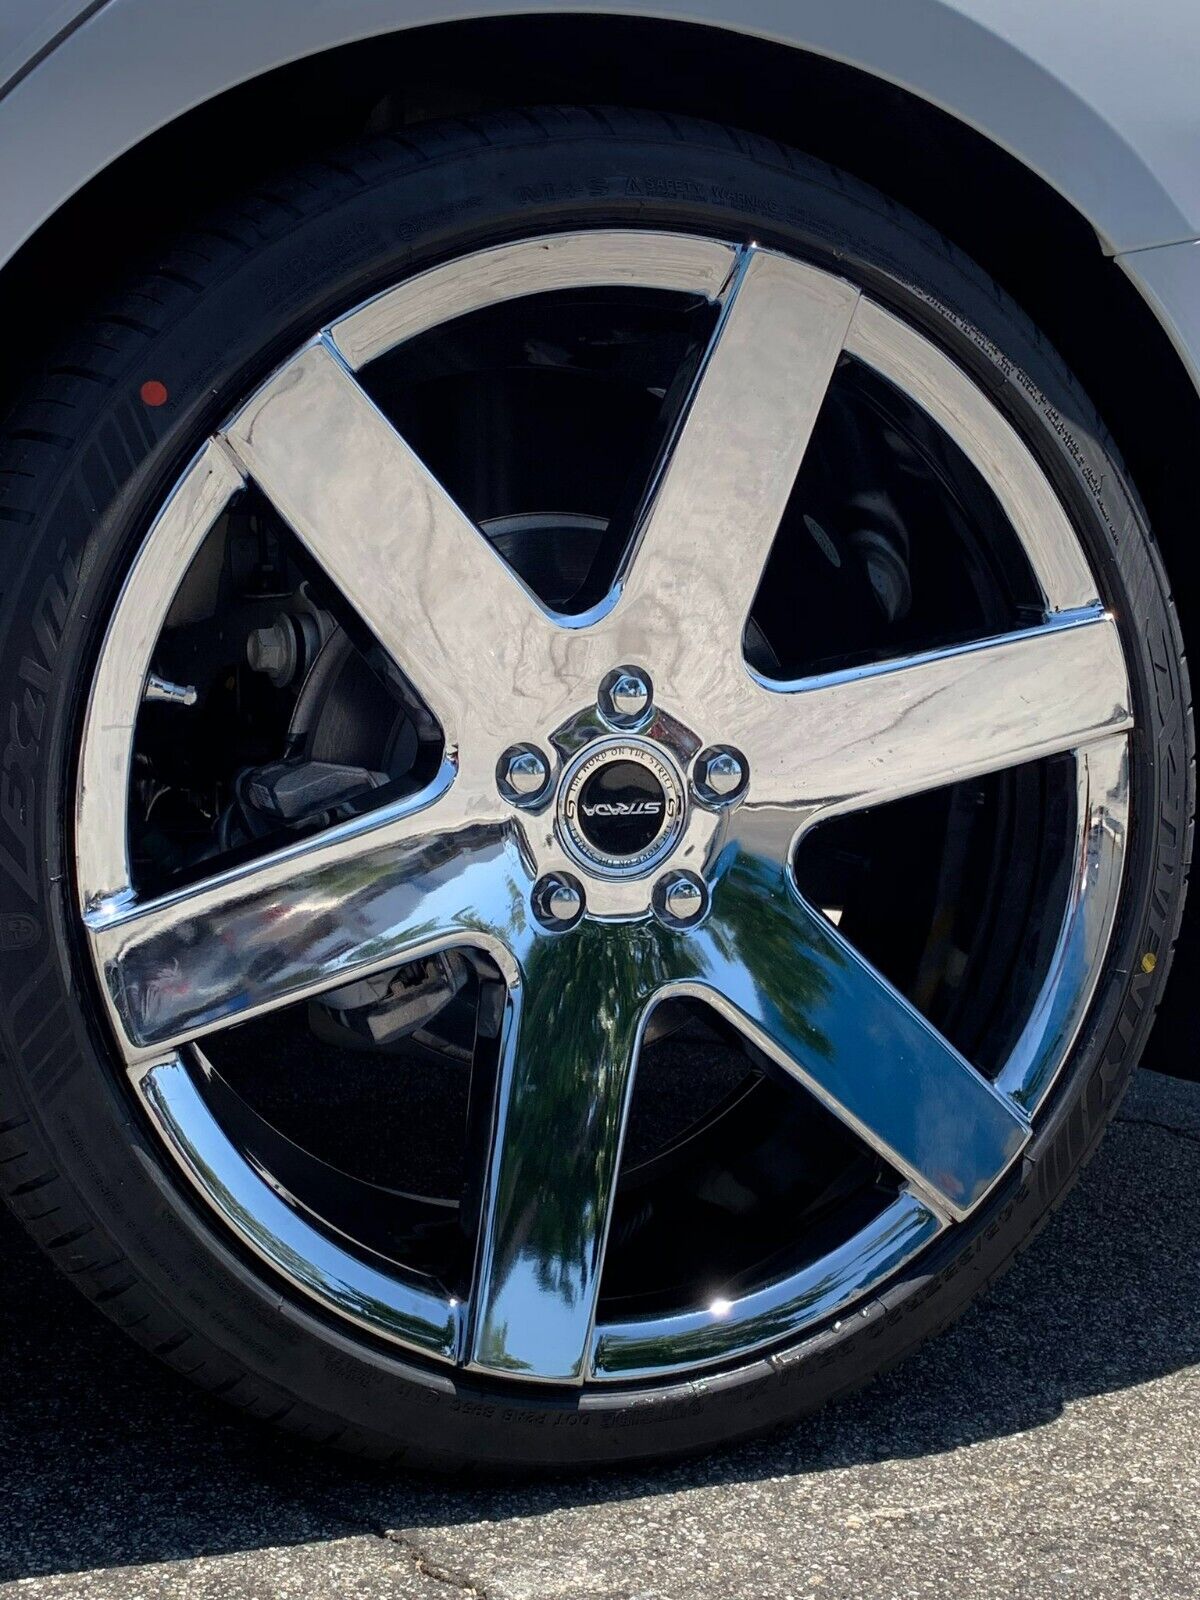 26'' K9 6198 Chrome Wheels with Tires Silverado Tahoe Titan Yukon Escalade